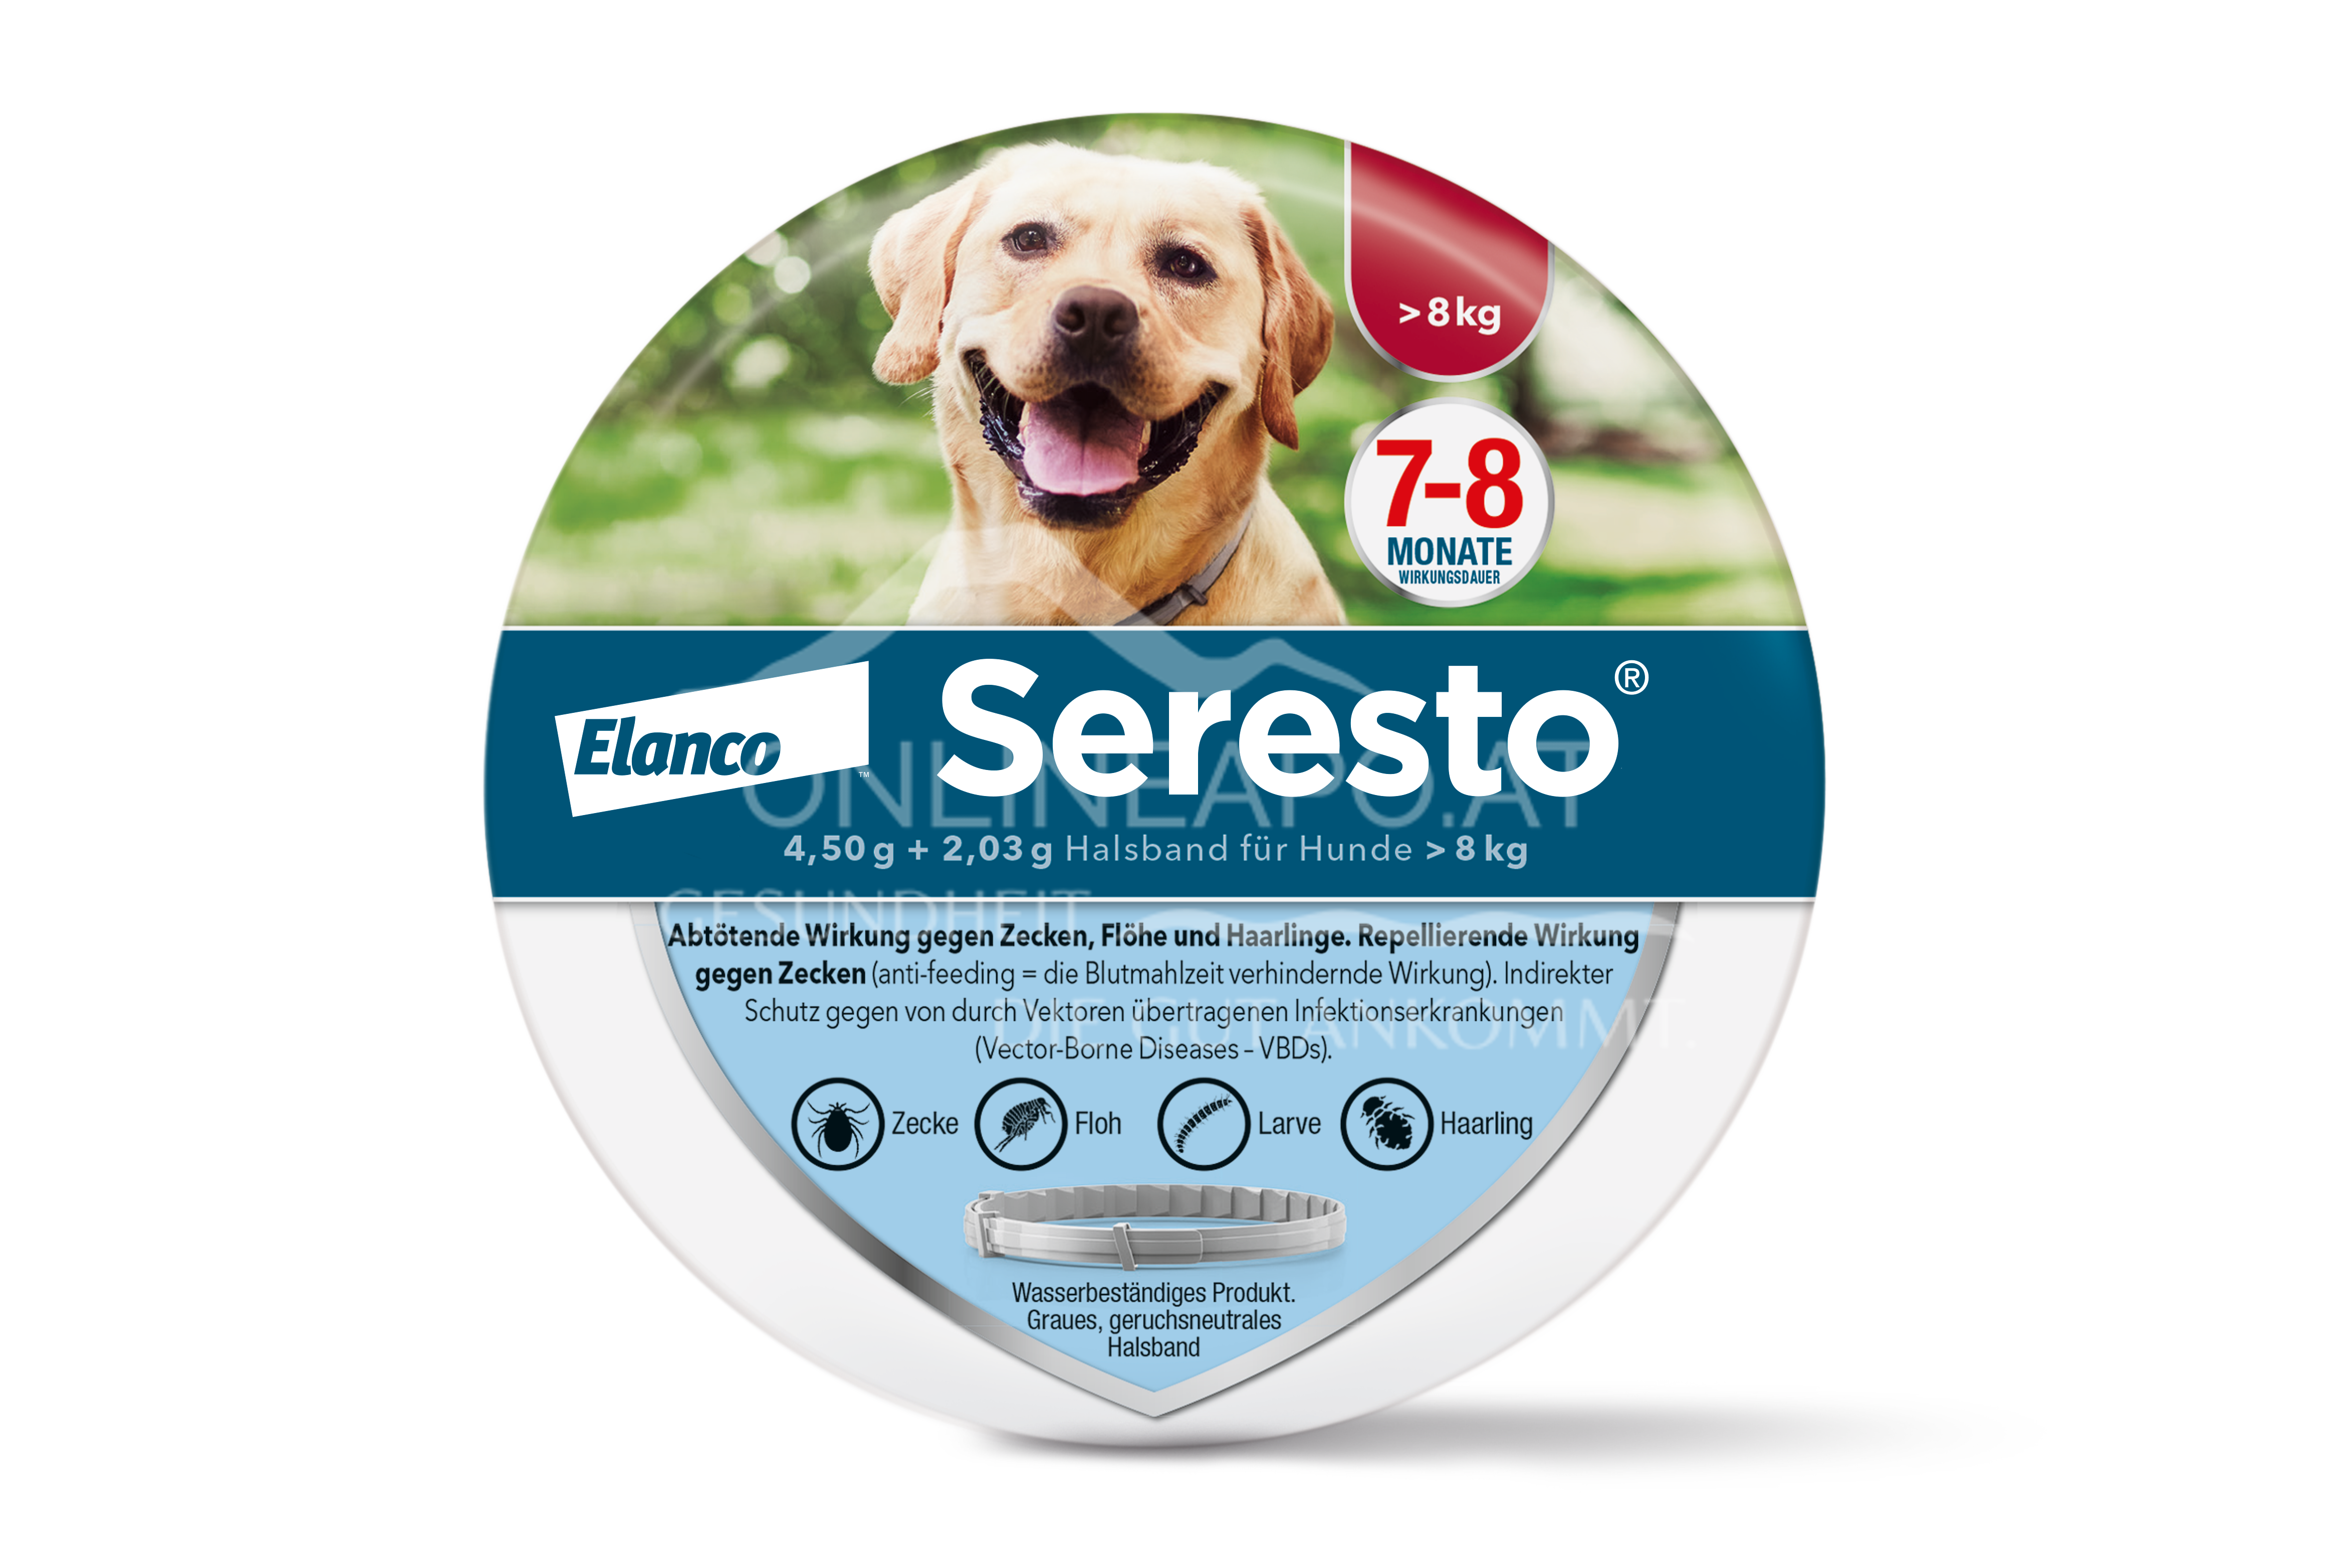 Seresto® 4,50 g + 2,03 g Halsband für Hunde > 8 kg